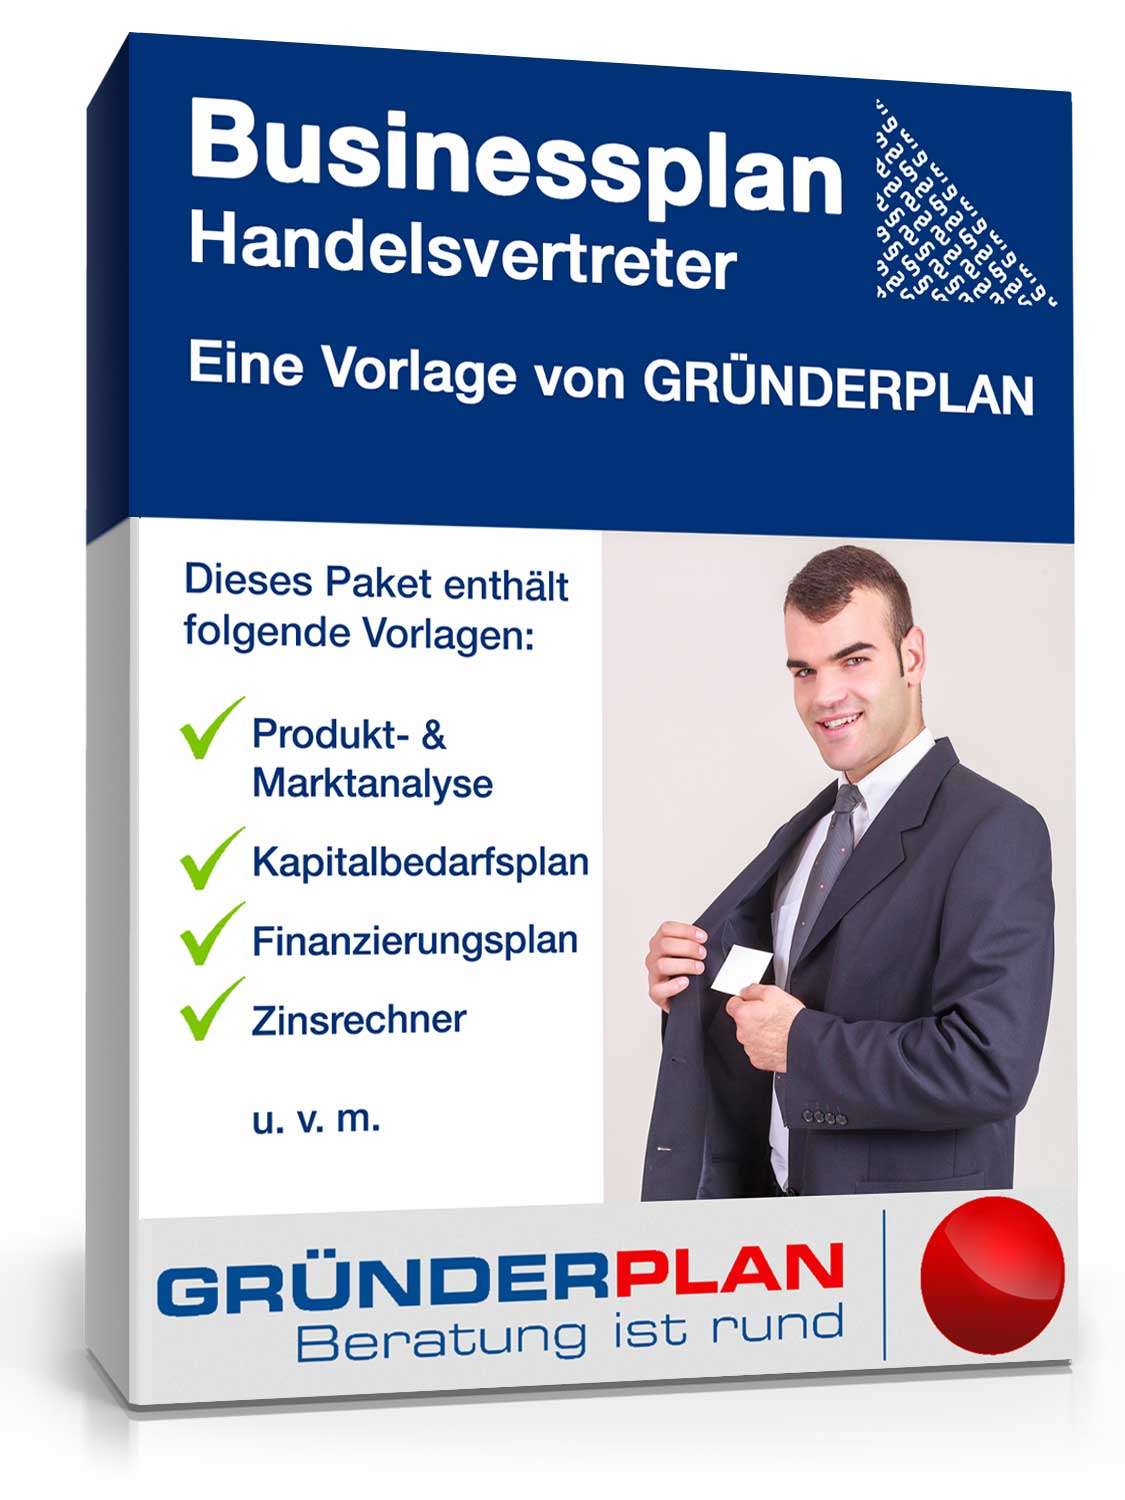 Hauptbild des Produkts: Businessplan Handelsvertreter von Gründerplan